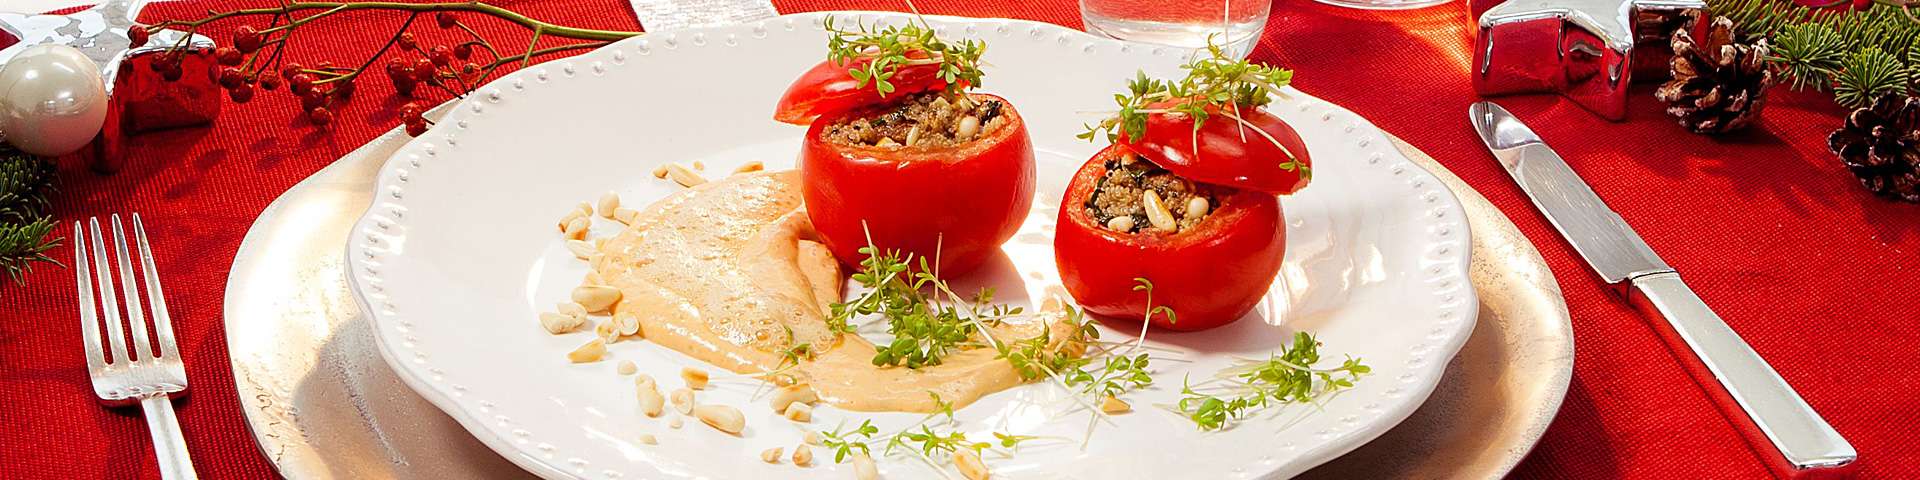 Bio-Rezept: Gefüllte Tomaten mit Amaranth-Spinat-Pinienkern-Füllung ...